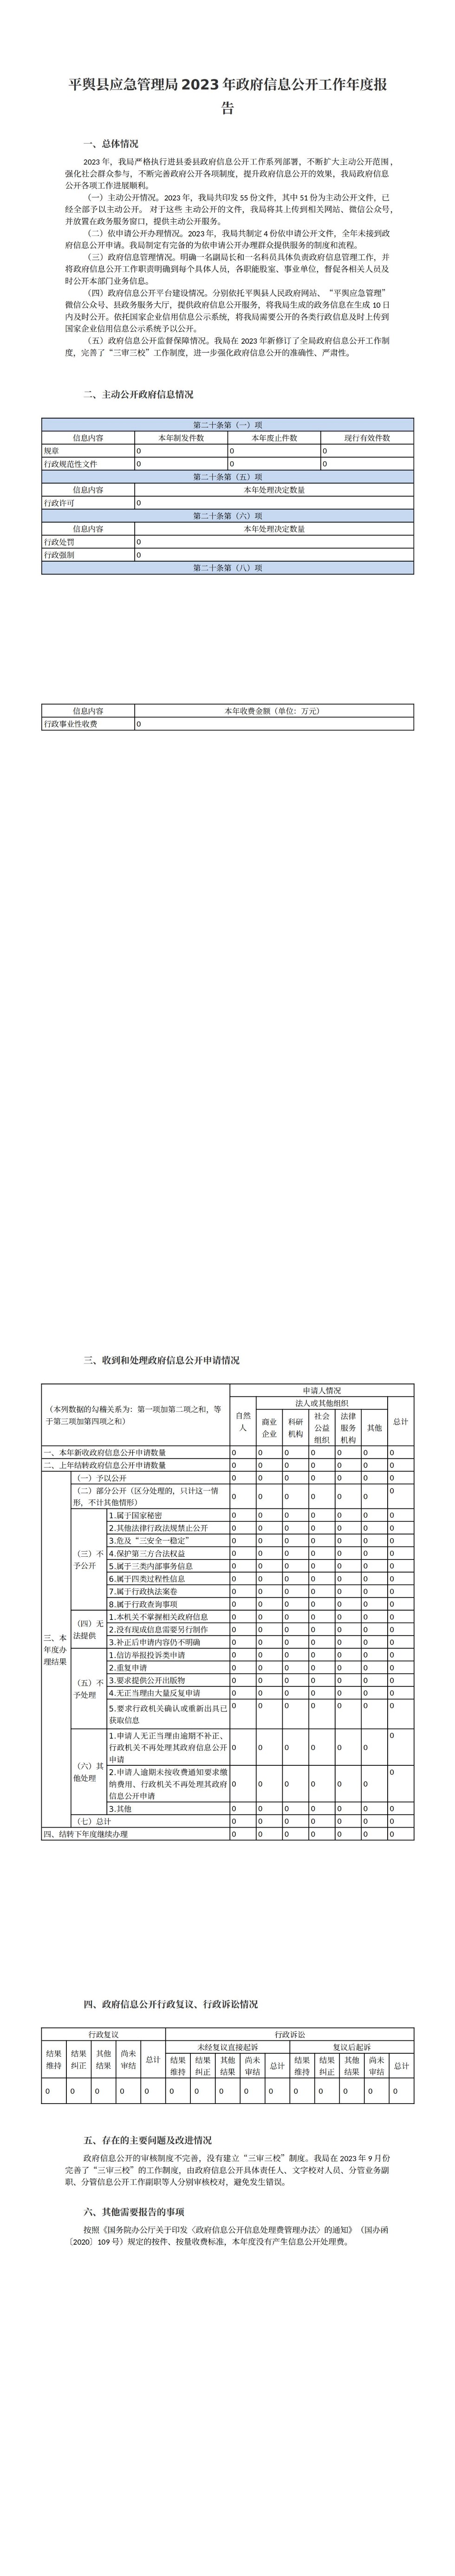 平舆县应急管理局2023年政府信息公开工作年度报告_00.jpg